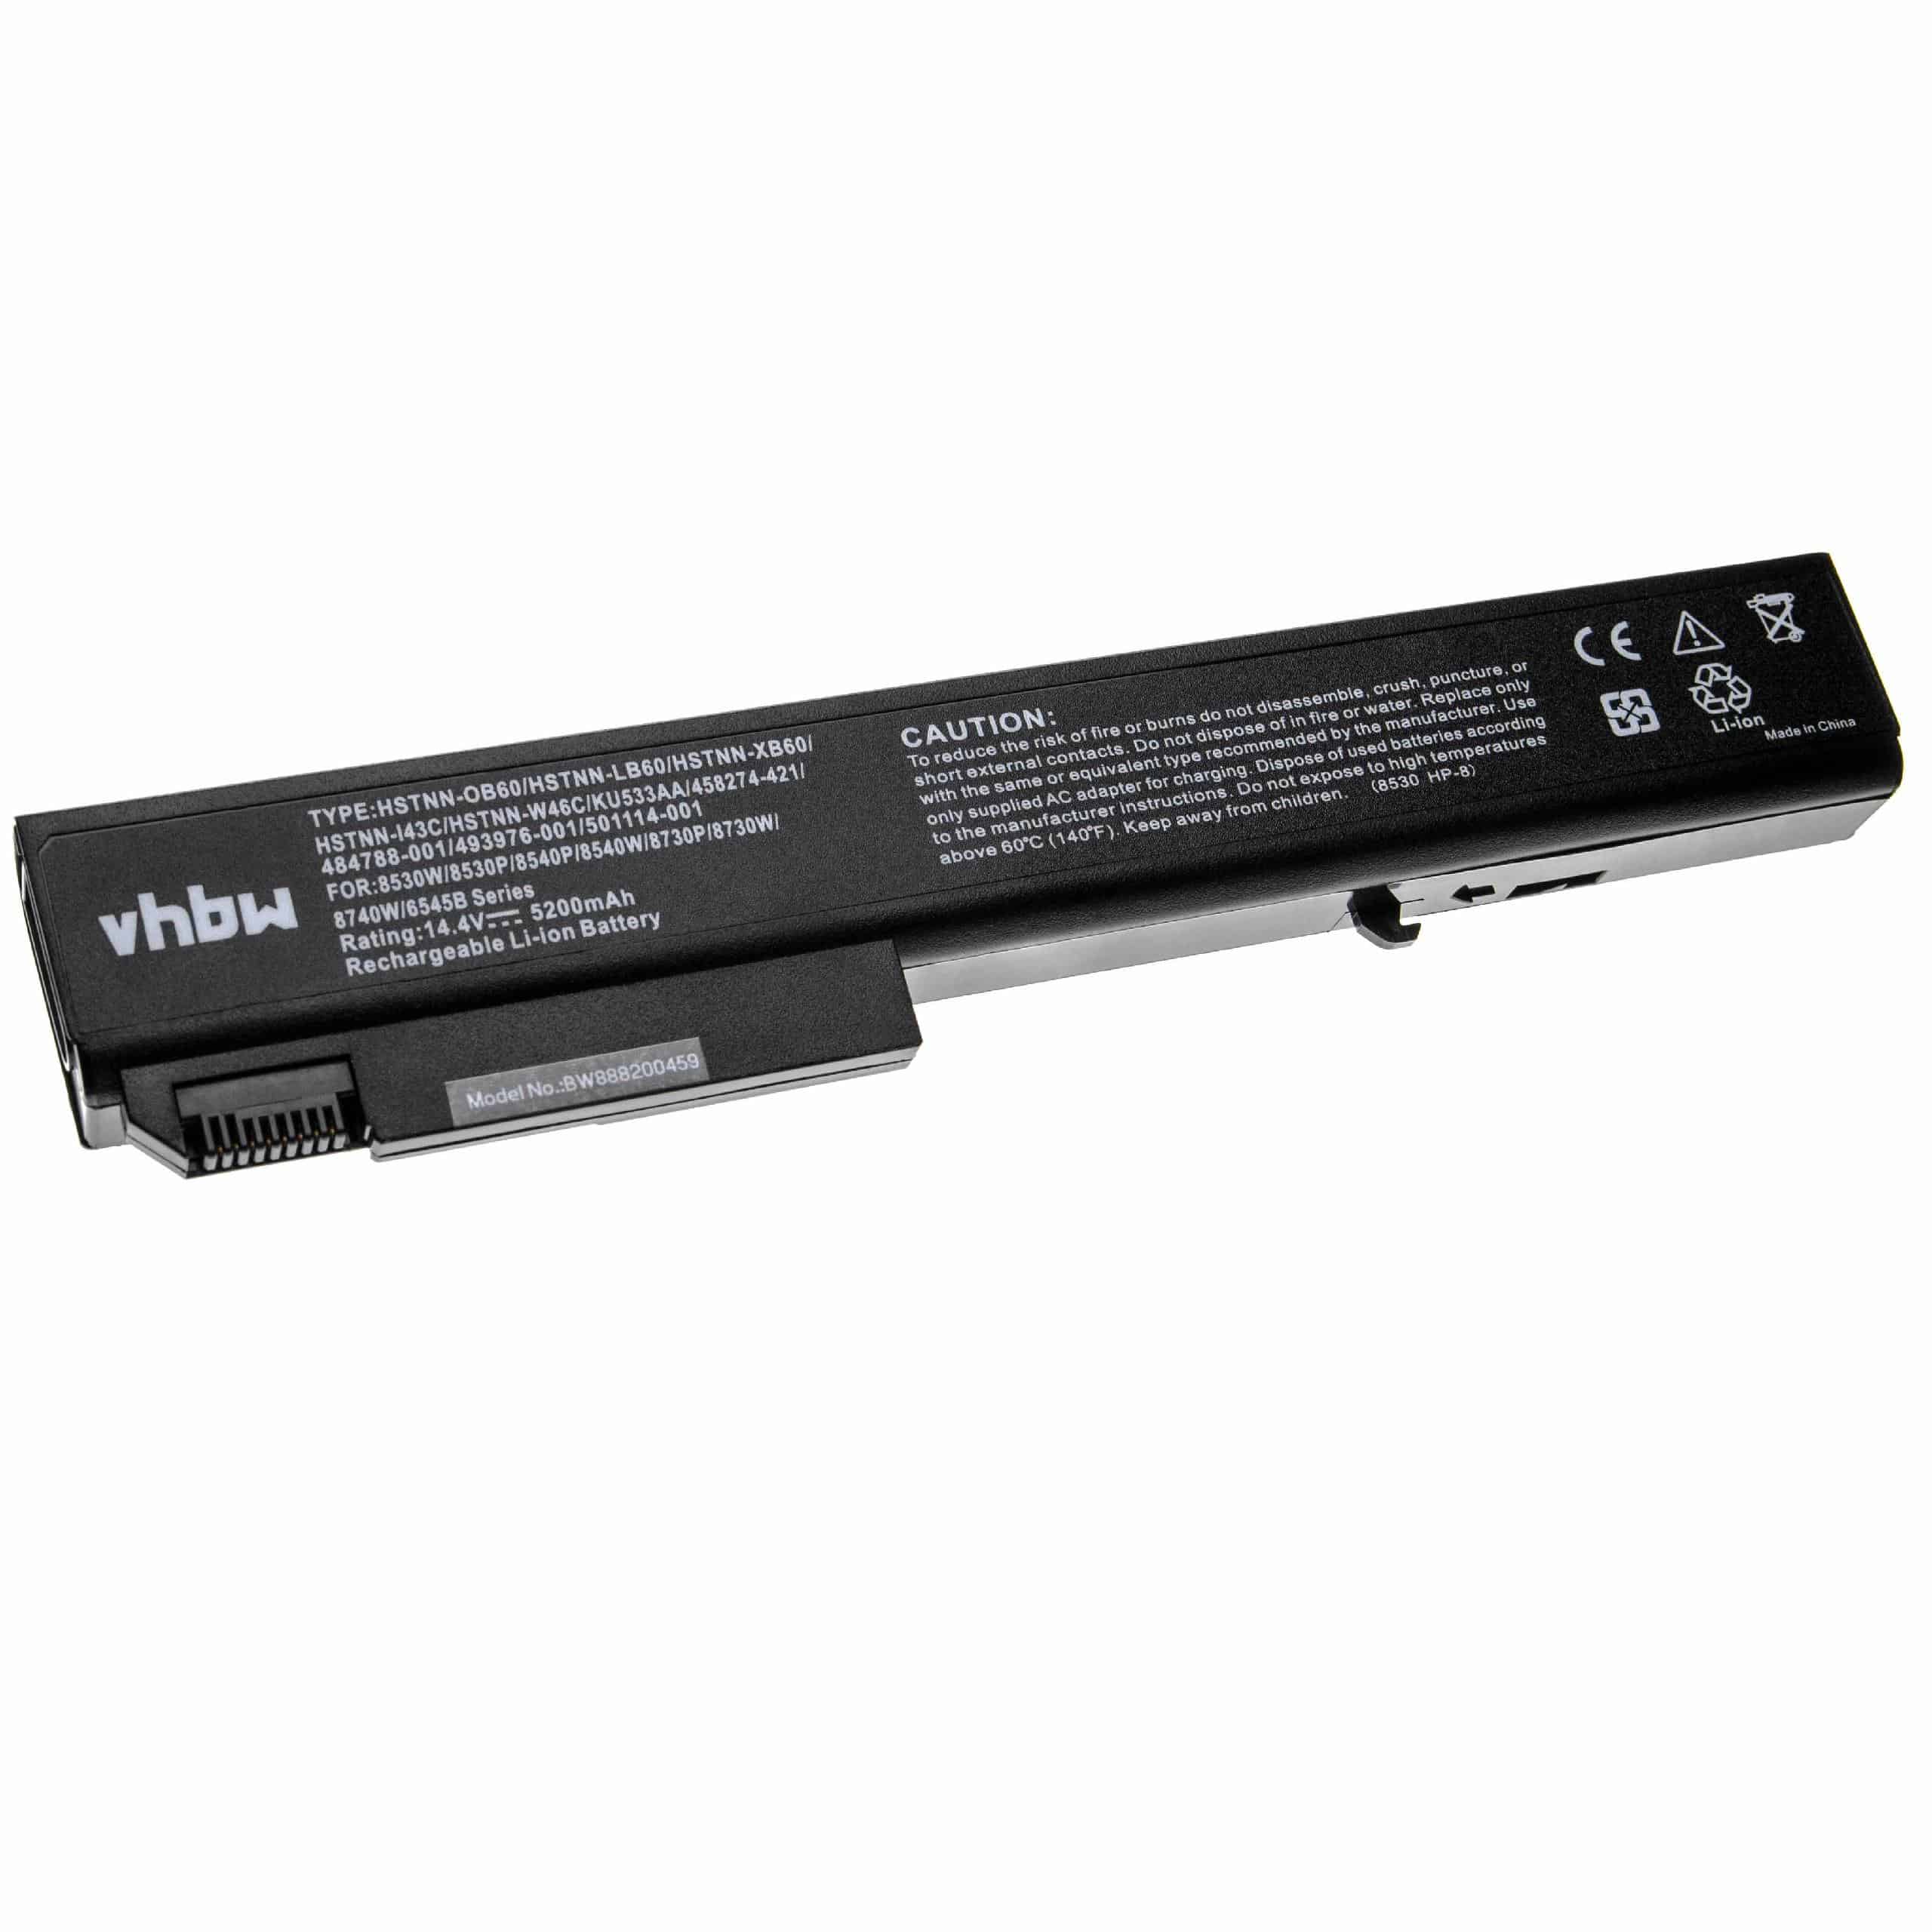 Batterie remplace HP 493976-001, 484788-001, 458274-421 pour ordinateur portable - 5200mAh 14,4V Li-ion, noir